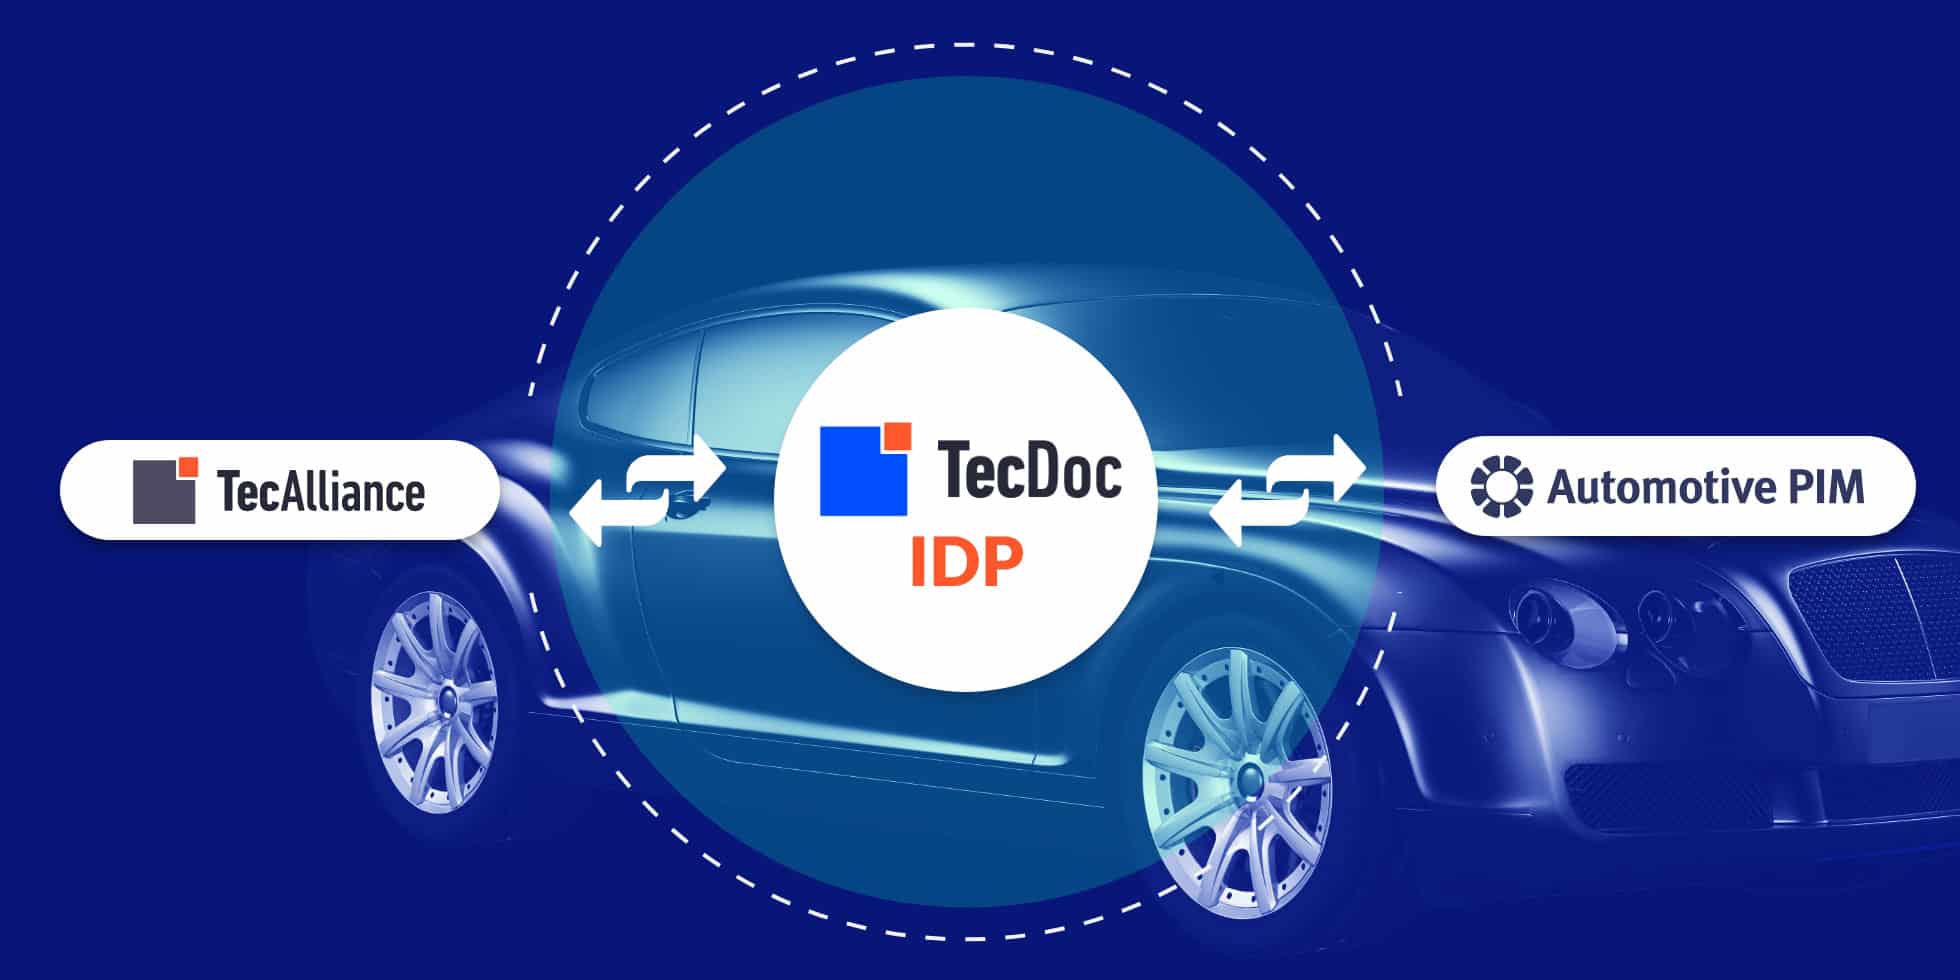 AutomotivePIM TecDOc IDP